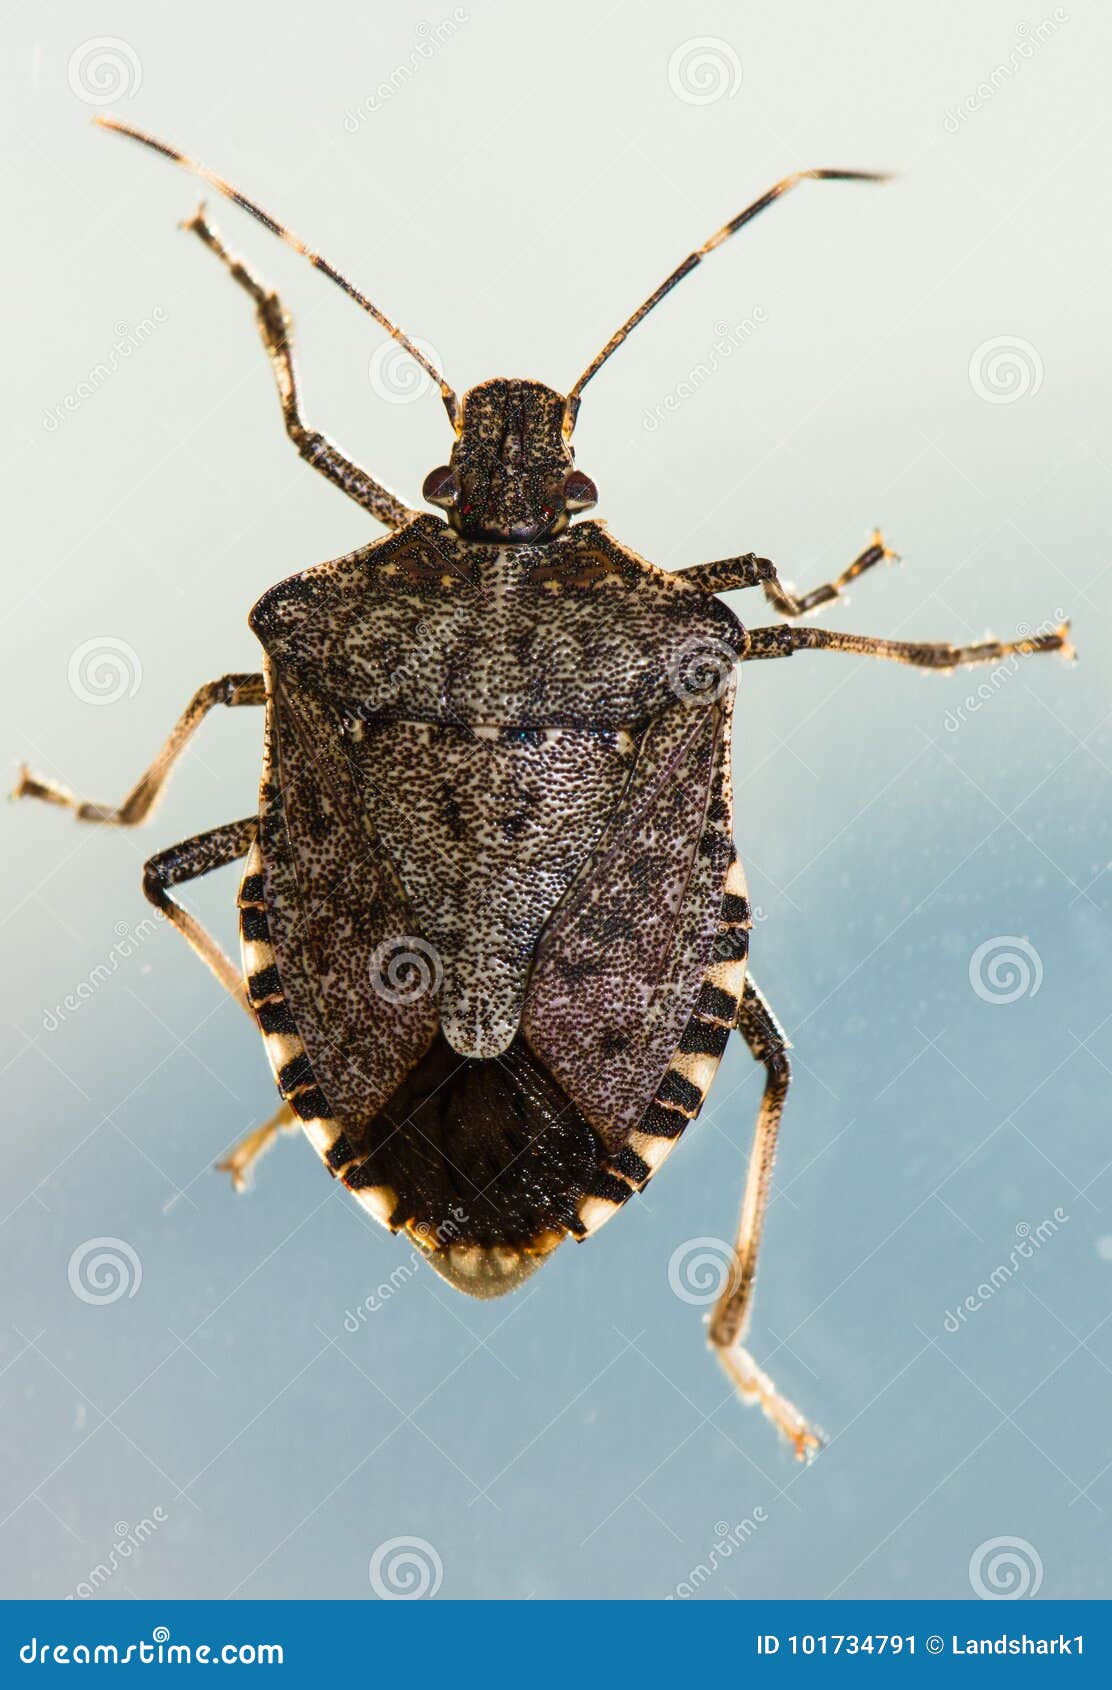 臭虫在白色隔绝的臭虫属lectularius 库存图片. 图片 包括有 夜间, 昆虫, 详细资料, 发痒 - 111056711